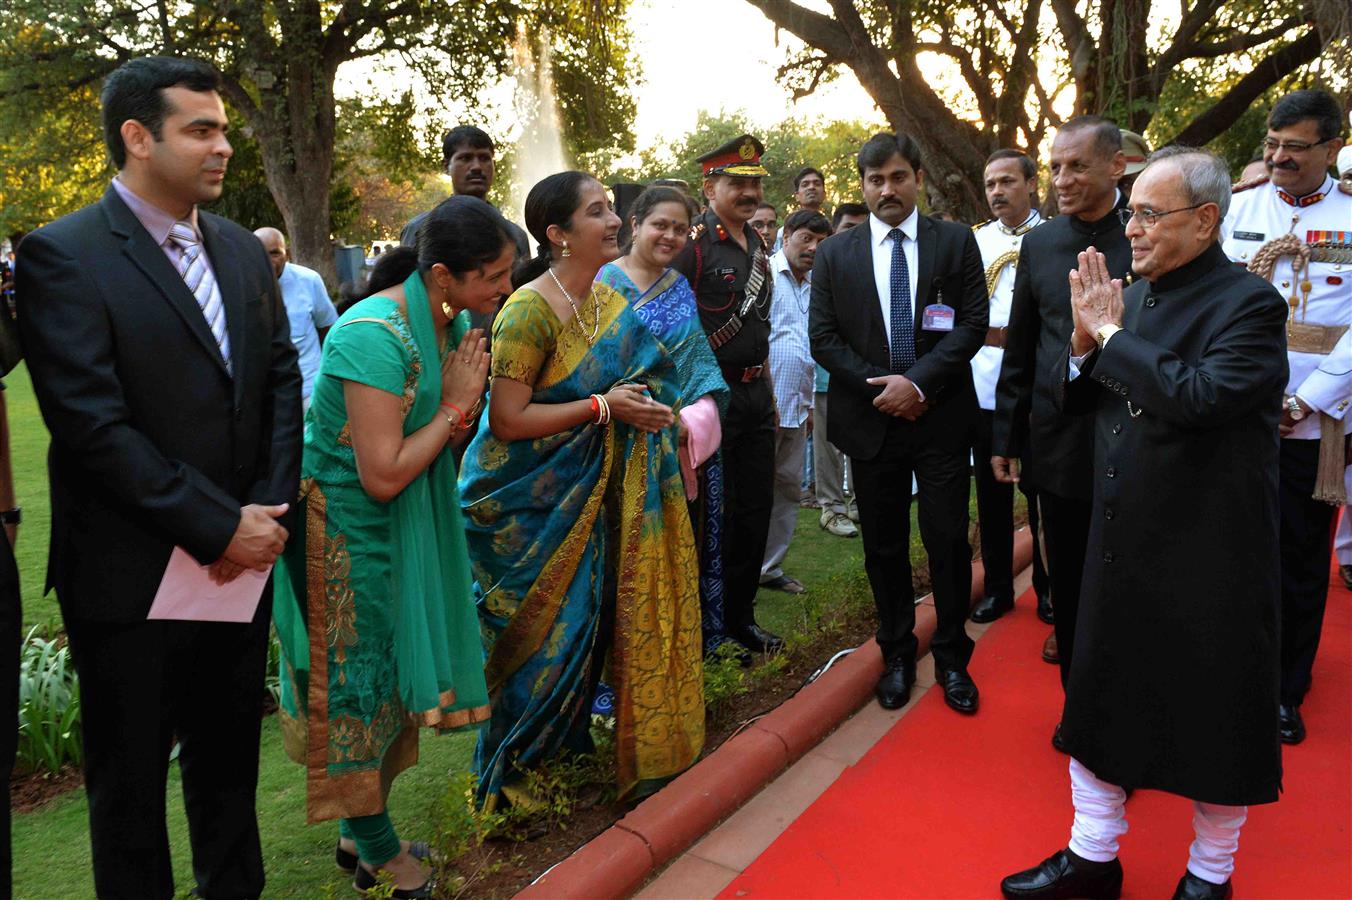 भारत के राष्ट्रपति, श्री प्रणब मुखर्जी ने 30 दिसंबर, 2015 को, बोलारम, सिकंदराबाद में राष्ट्रपति निलयम में ‘एट होम’ समारोह का आयोजन किया